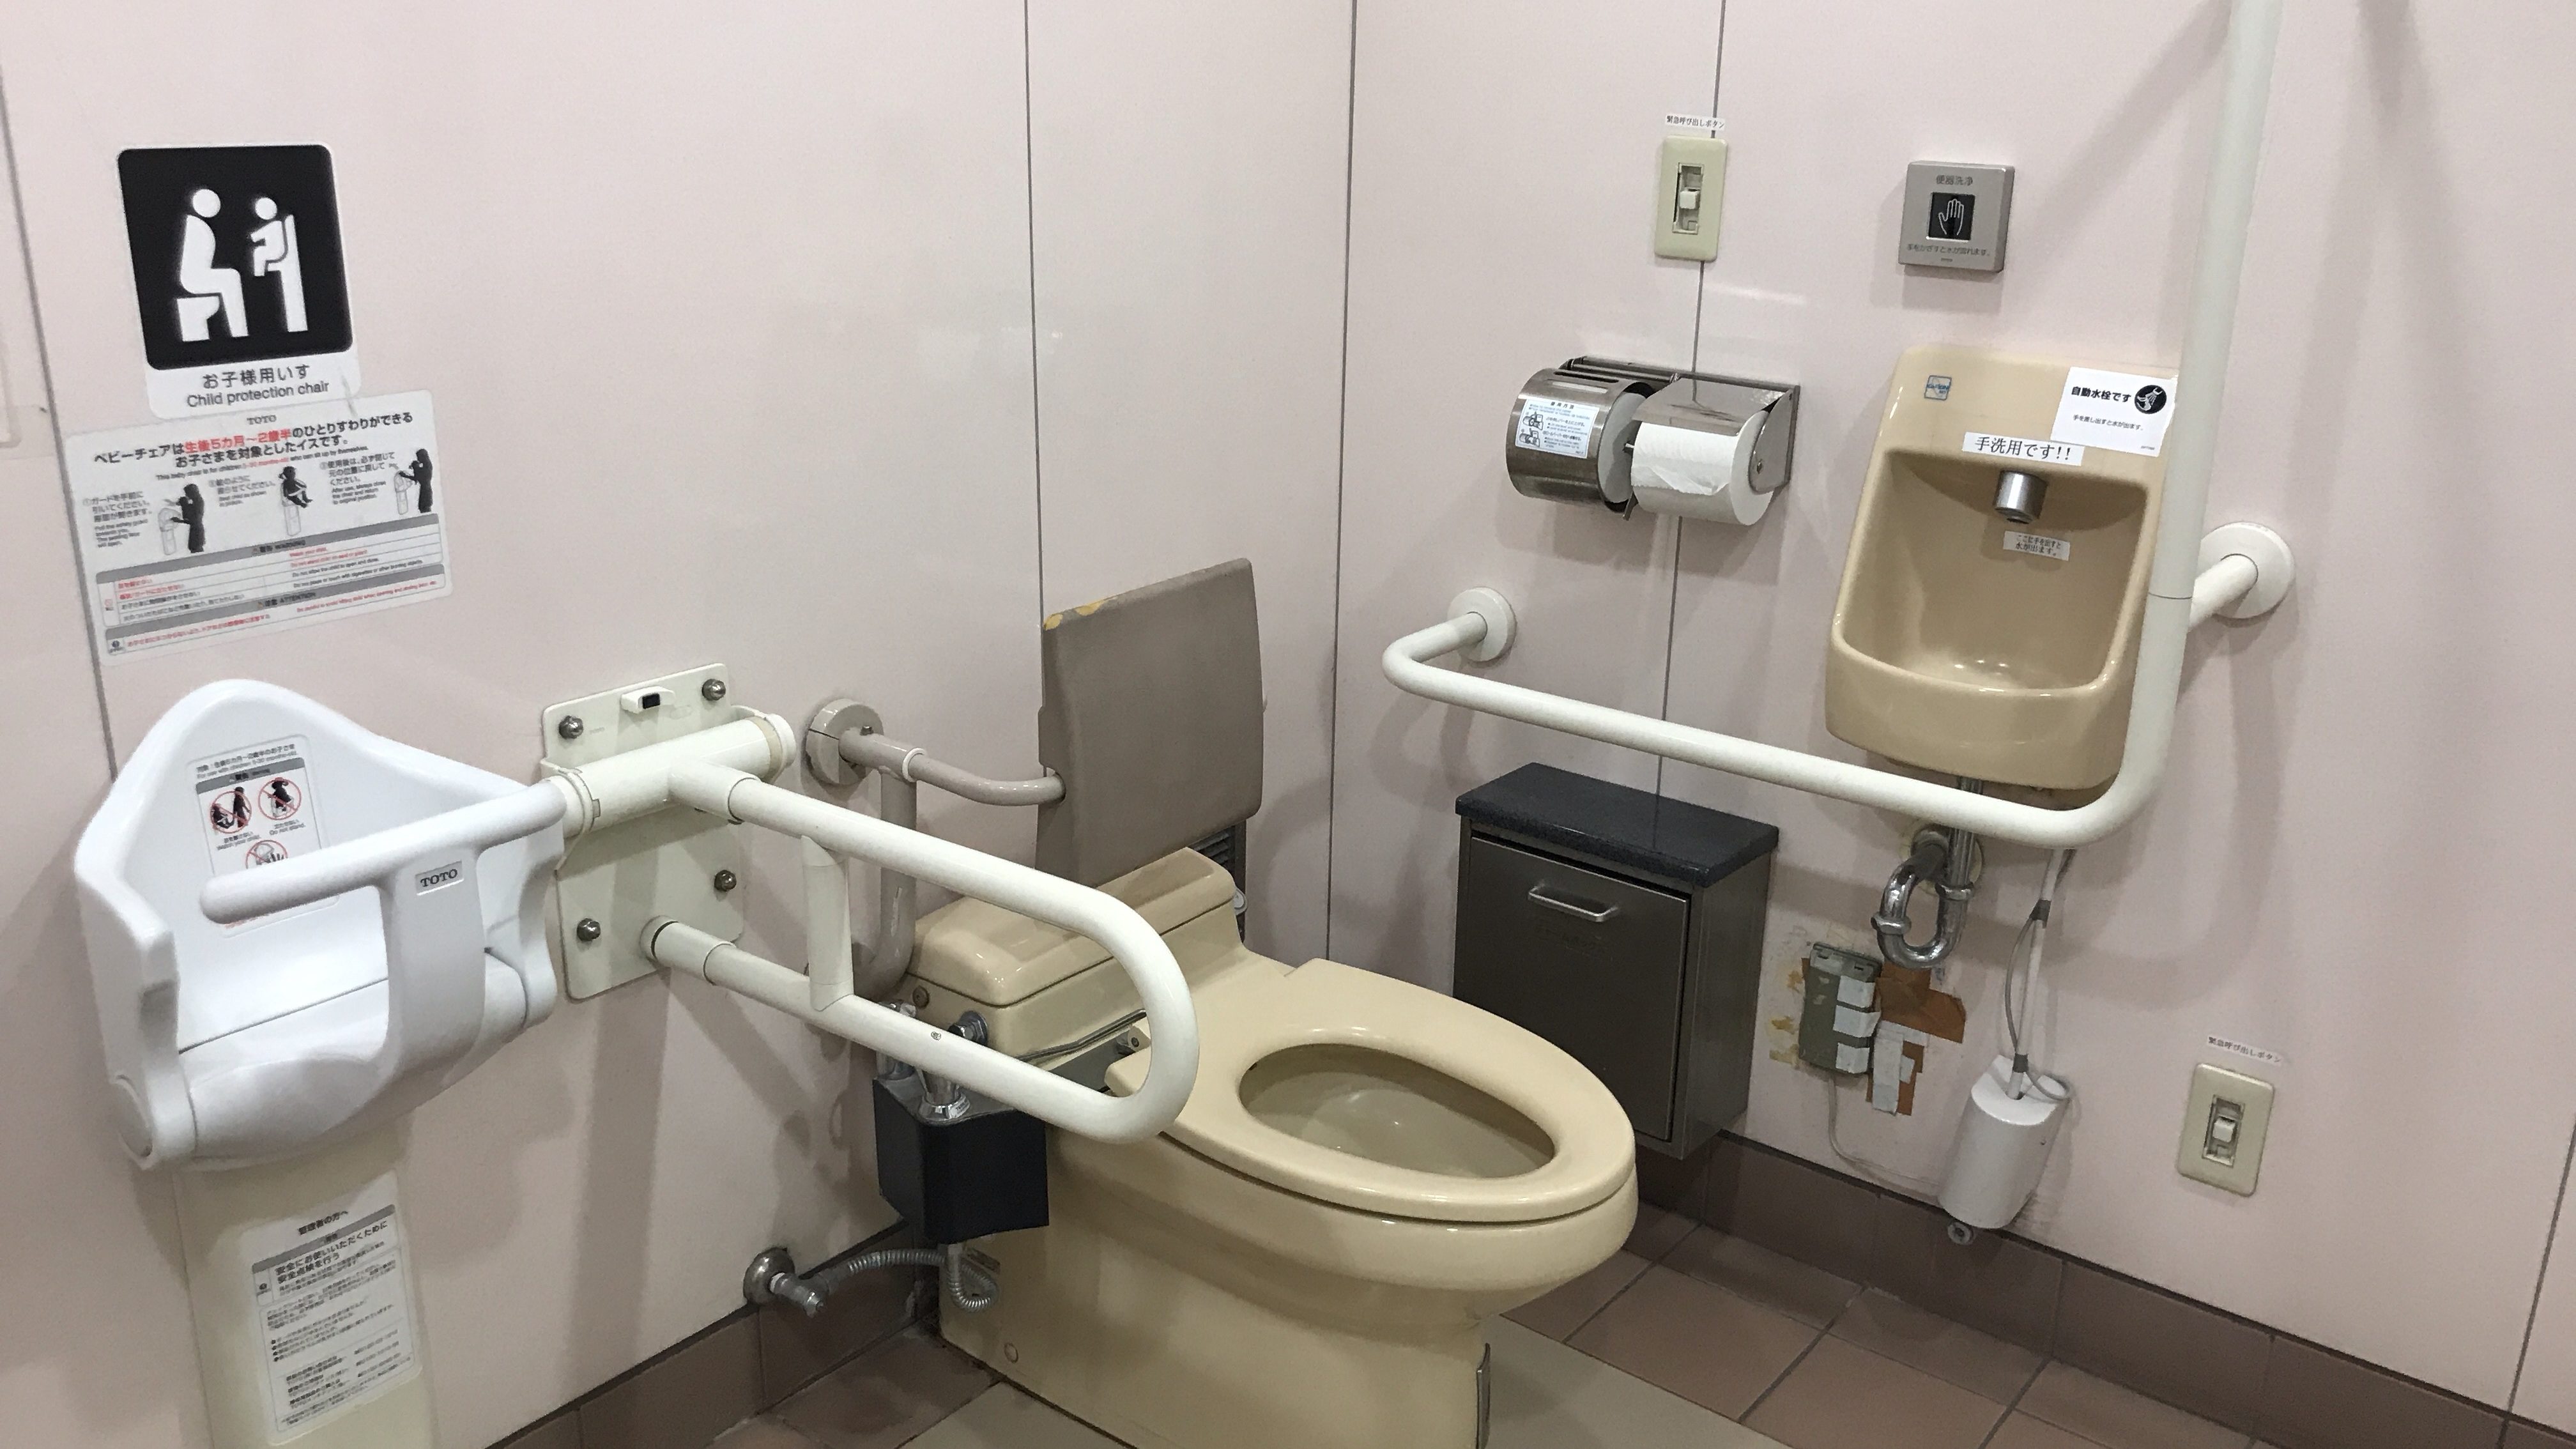 京王線「聖蹟桜ヶ丘駅」内にある「誰でもトイレ」 sotonie / ソトニー